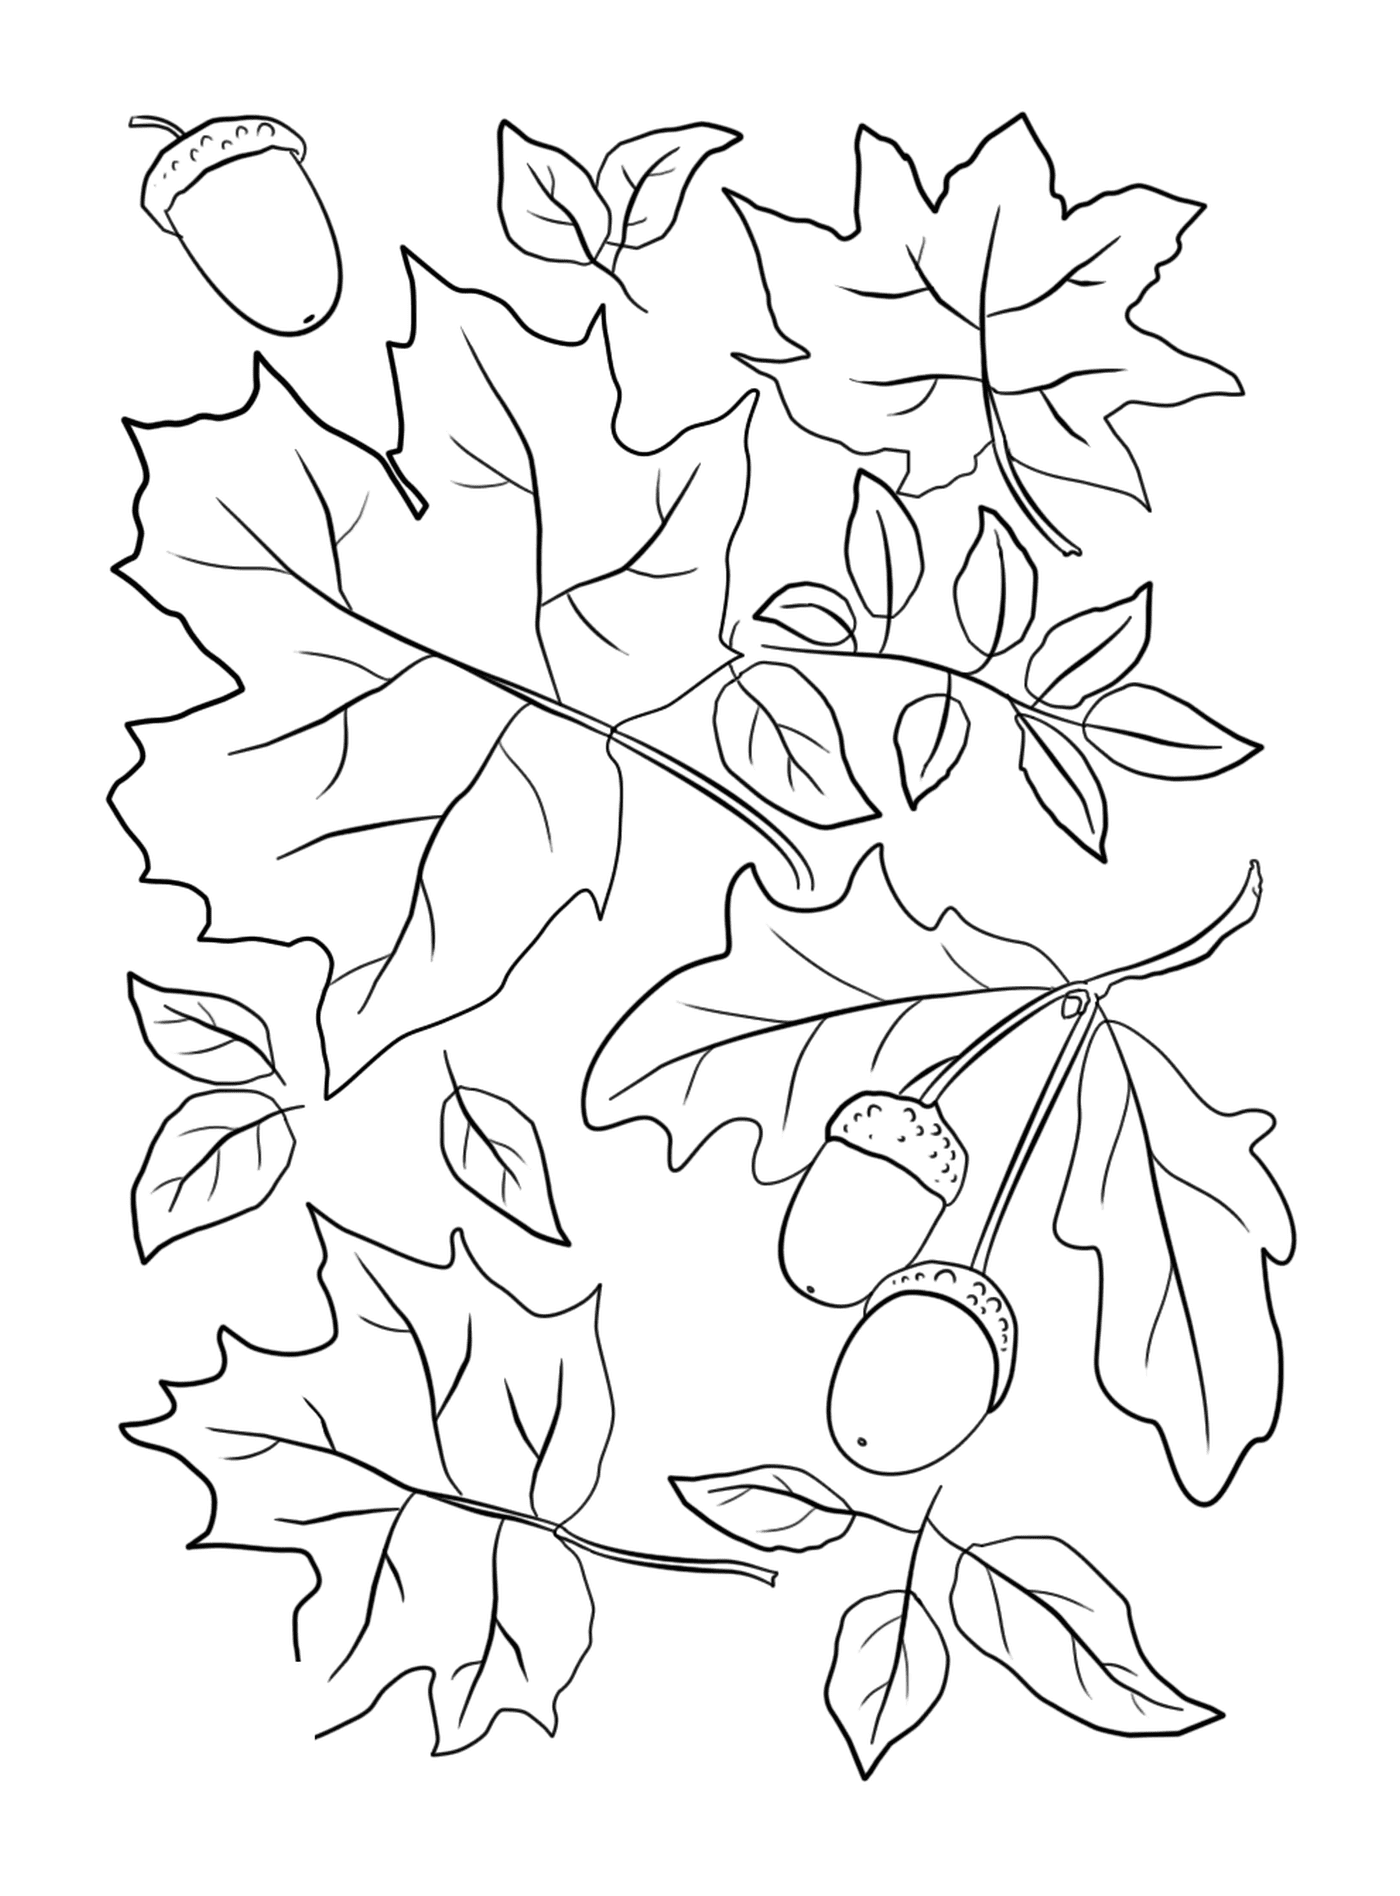  Hojas y bellotas en un árbol de otoño 